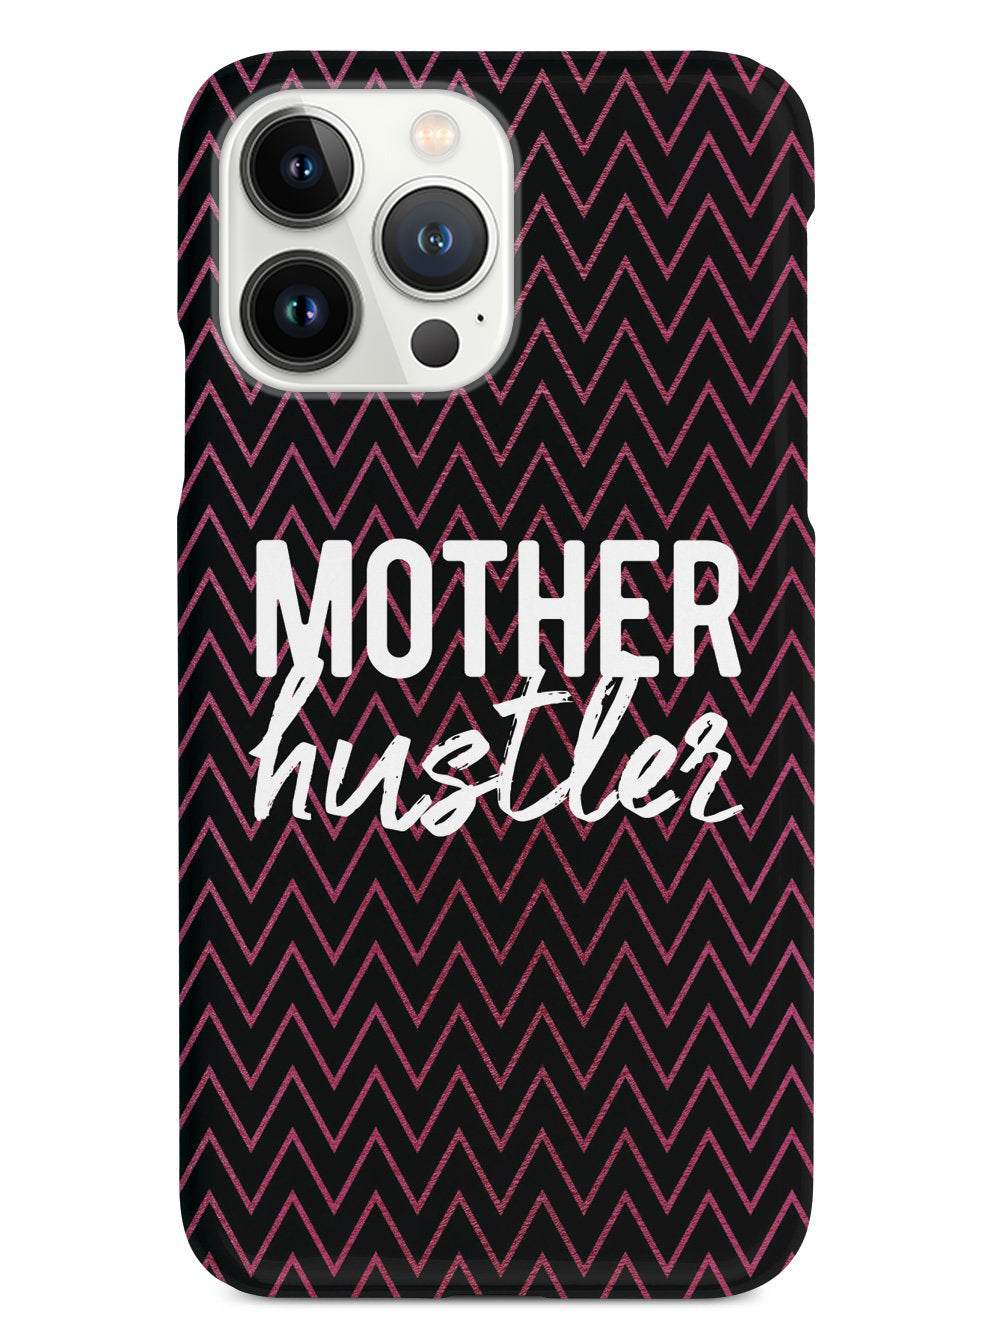 Mother Hustler - Black Case